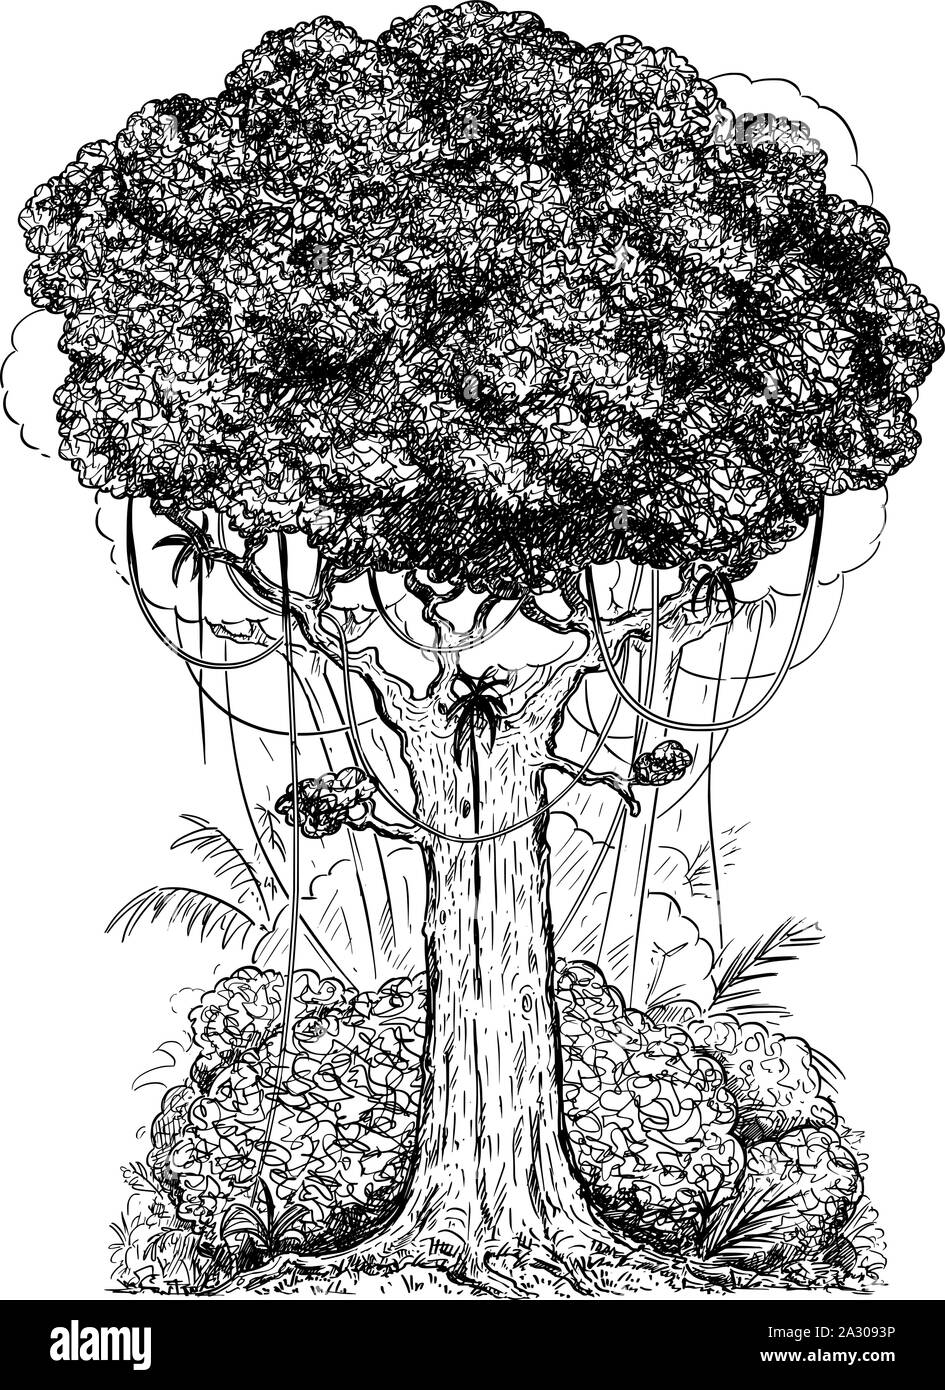 Vector de cartón pluma y tinta digital ilustración del árbol genérico y arbustos del bosque lluvioso. Ilustración del Vector